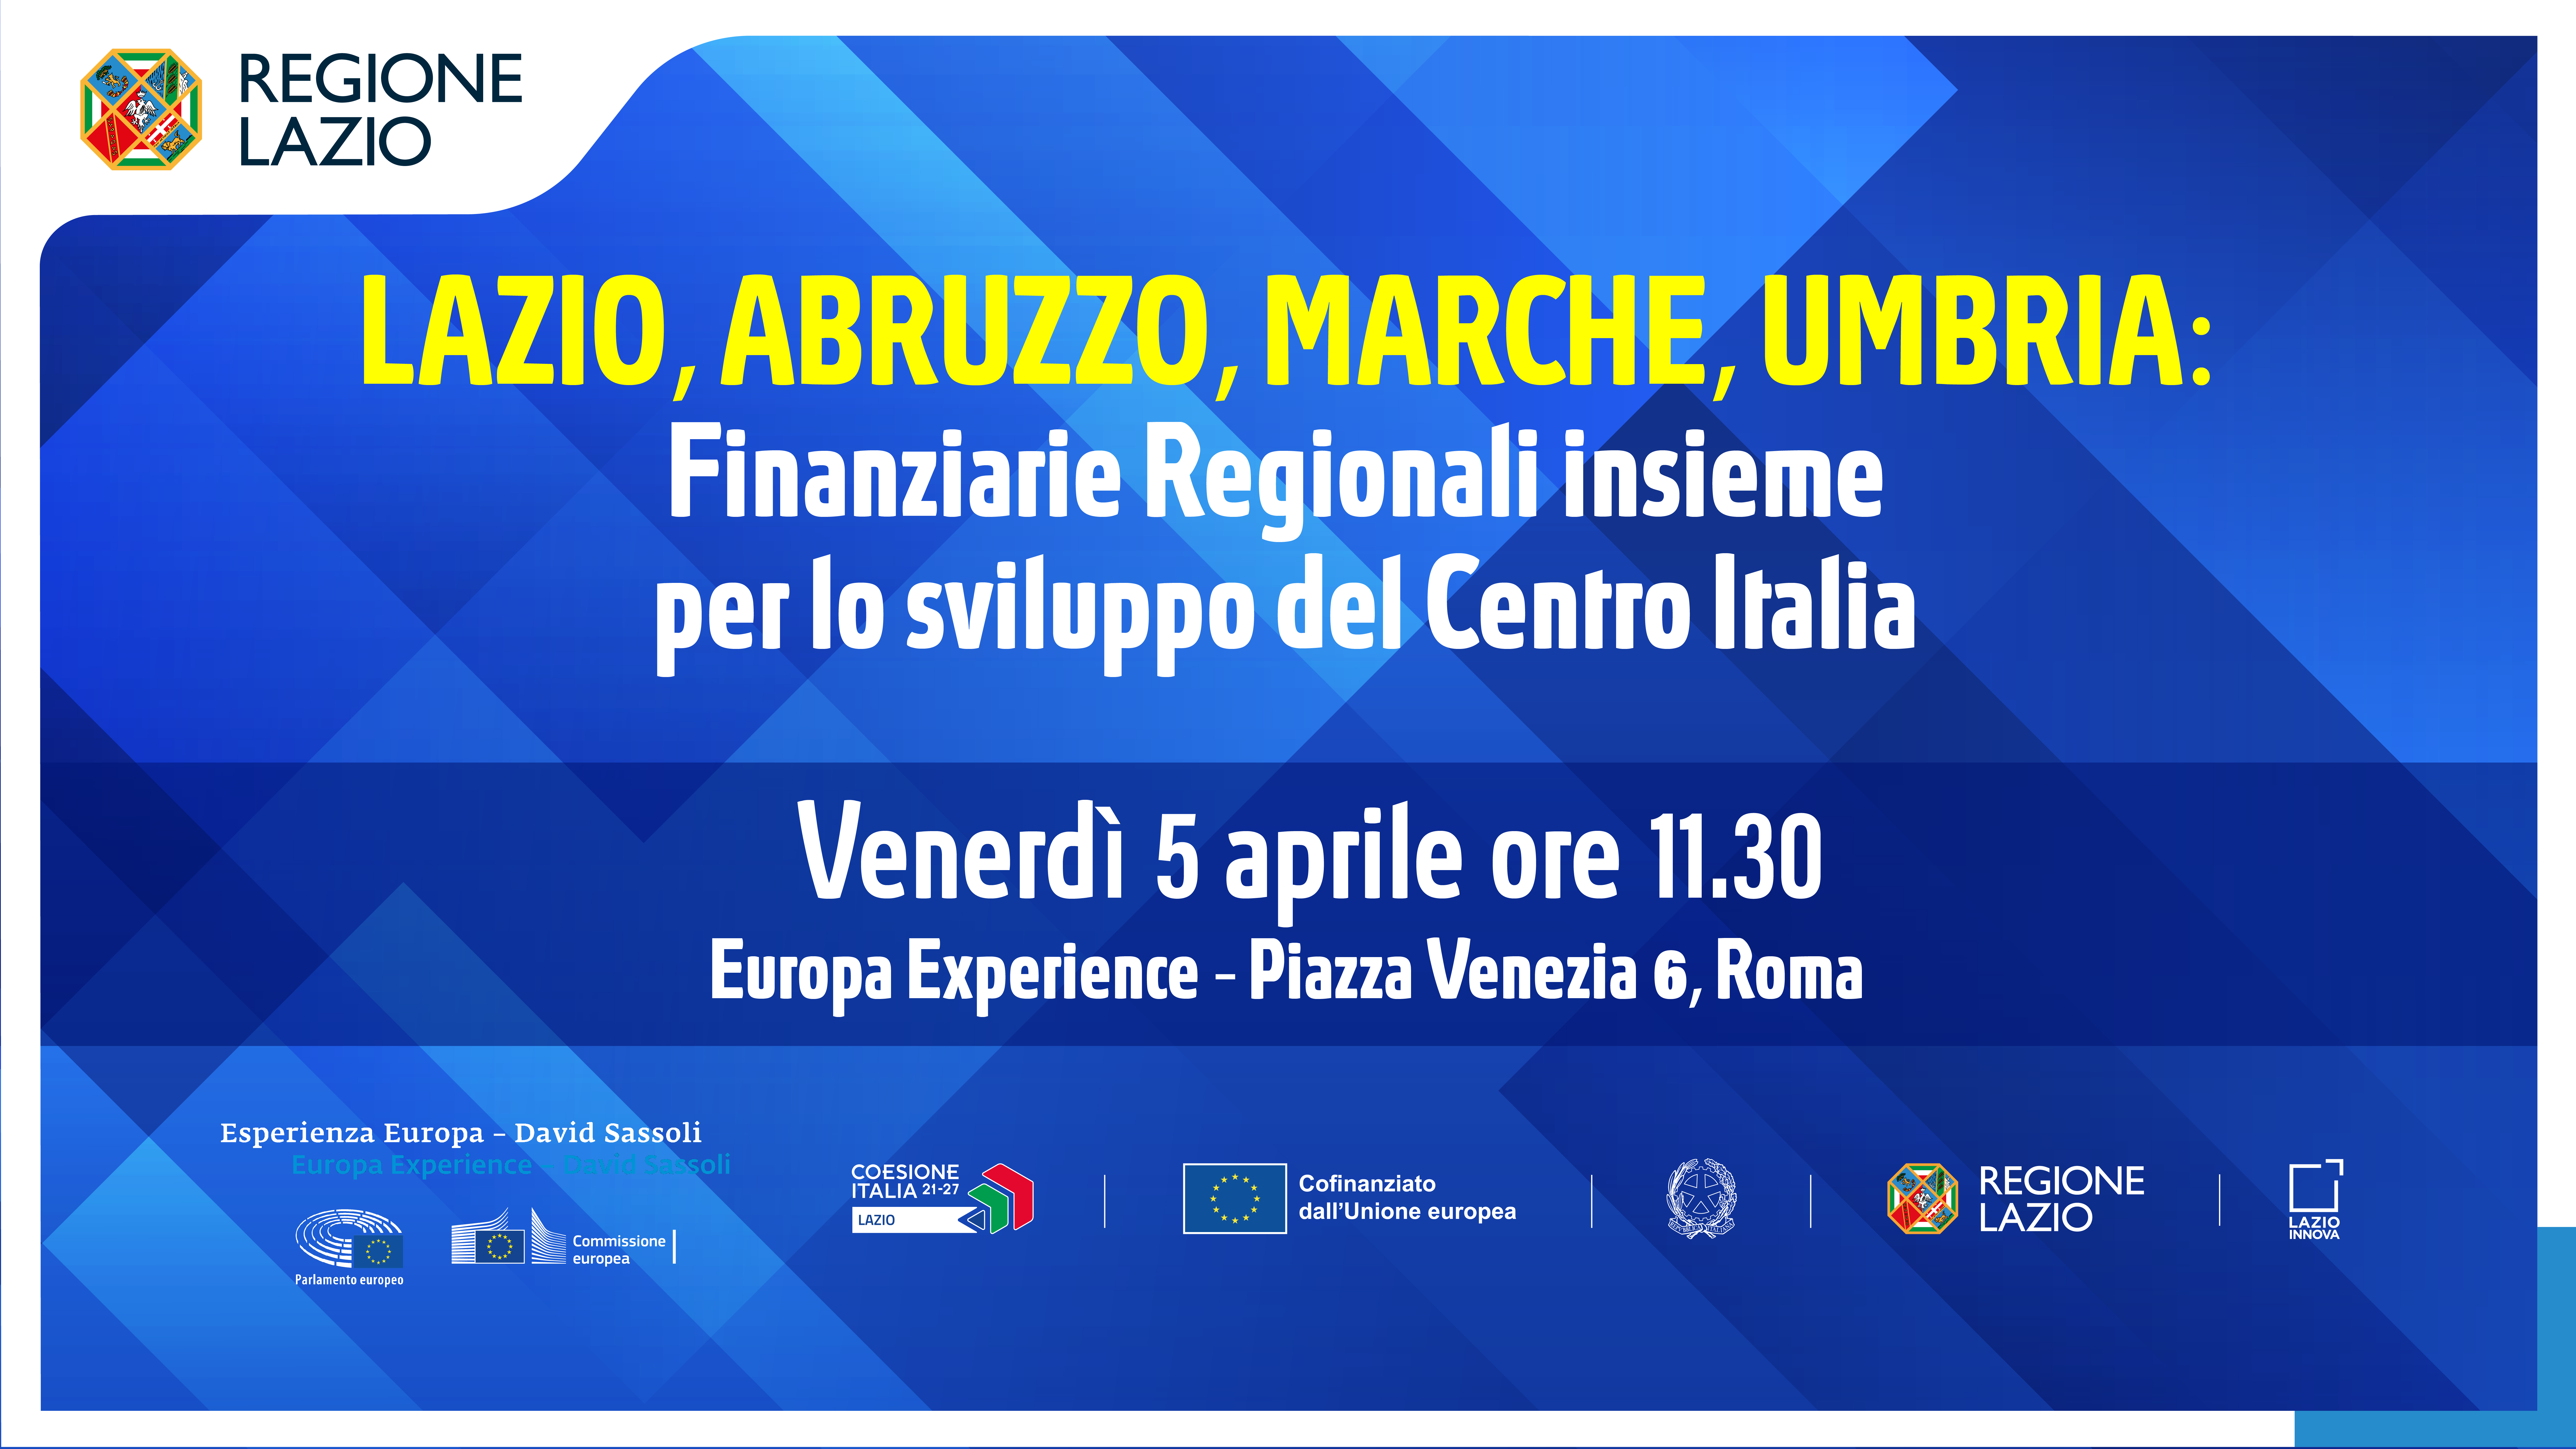 Finanziarie regionali insieme per lo sviluppo del Centro Italia